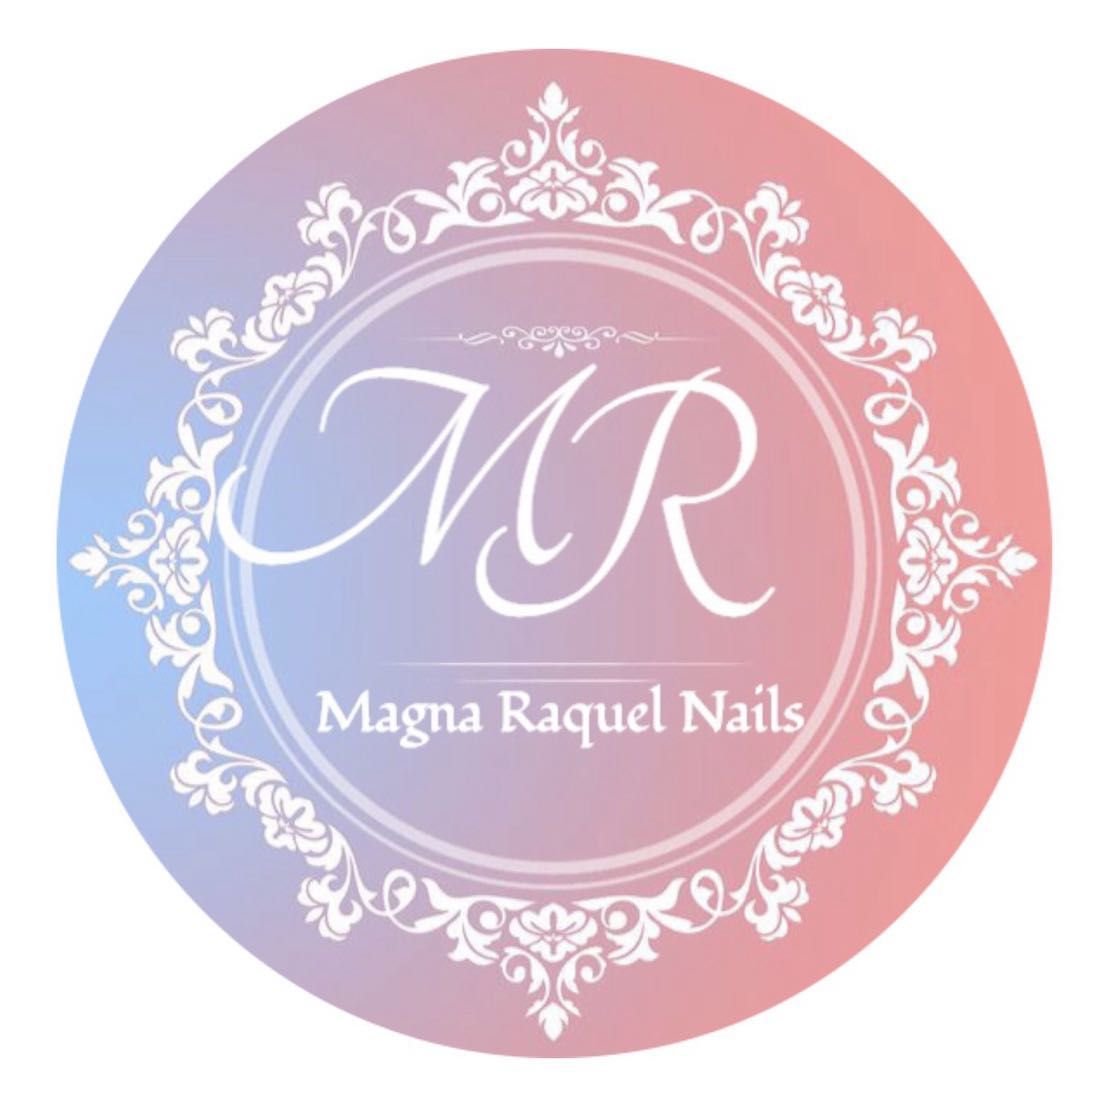 Magna Raquel Nails, 1159 Bedford St, Apto 03, Fall River, 02723